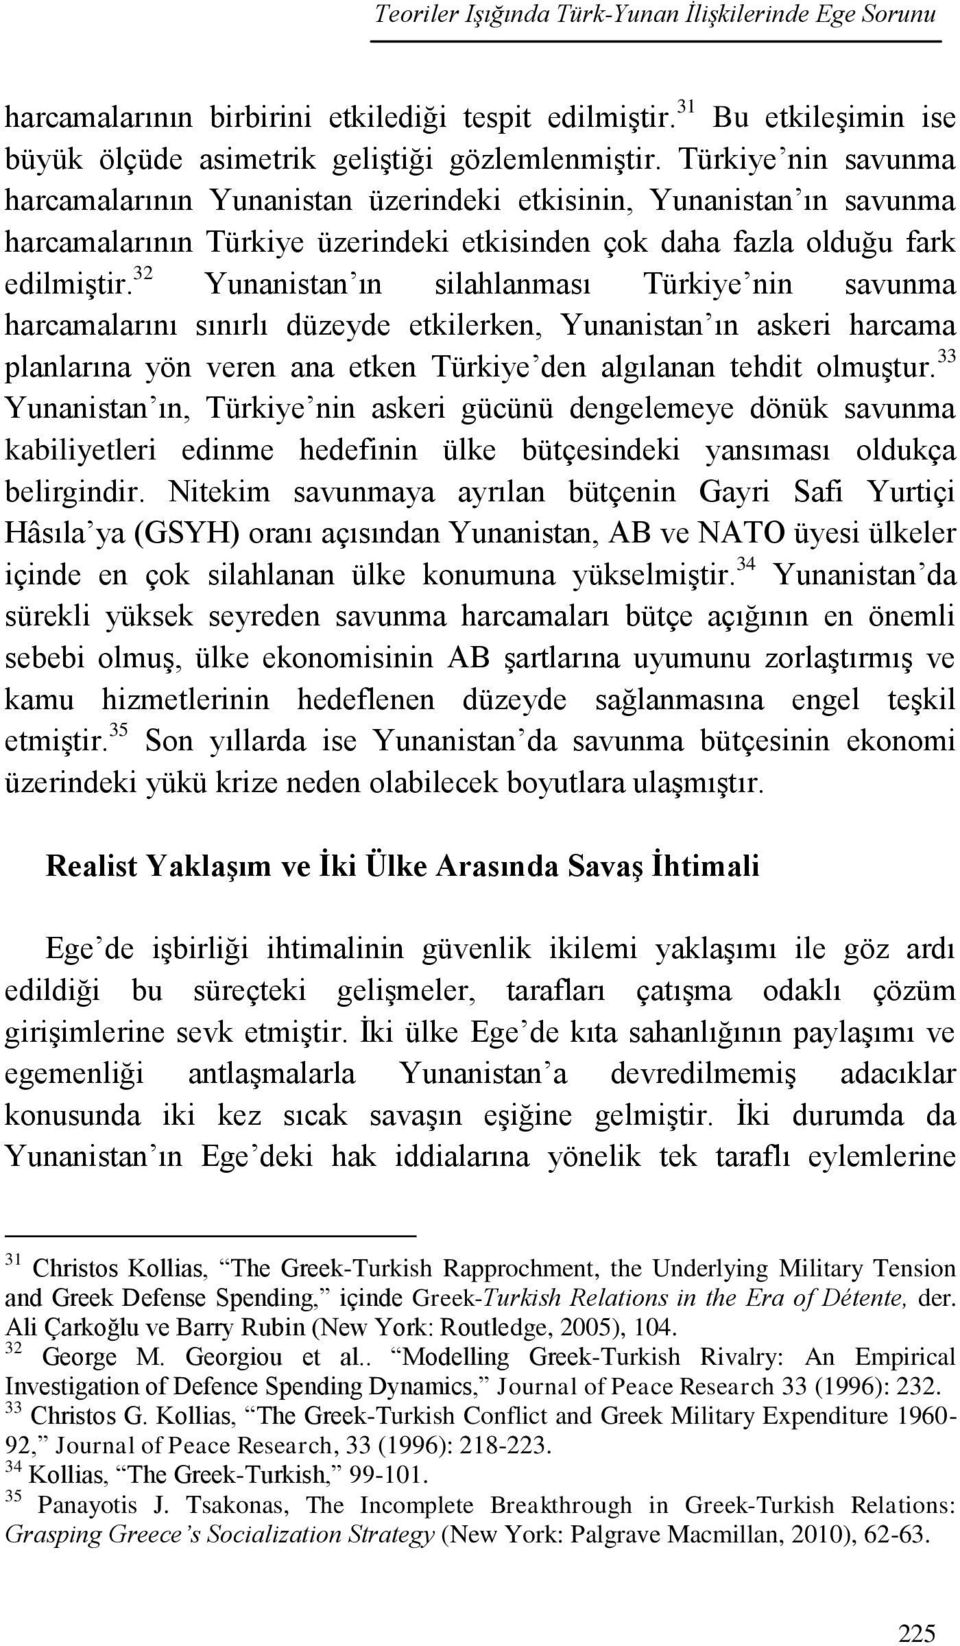 32 Yunanistan ın silahlanması Türkiye nin savunma harcamalarını sınırlı düzeyde etkilerken, Yunanistan ın askeri harcama planlarına yön veren ana etken Türkiye den algılanan tehdit olmuştur.